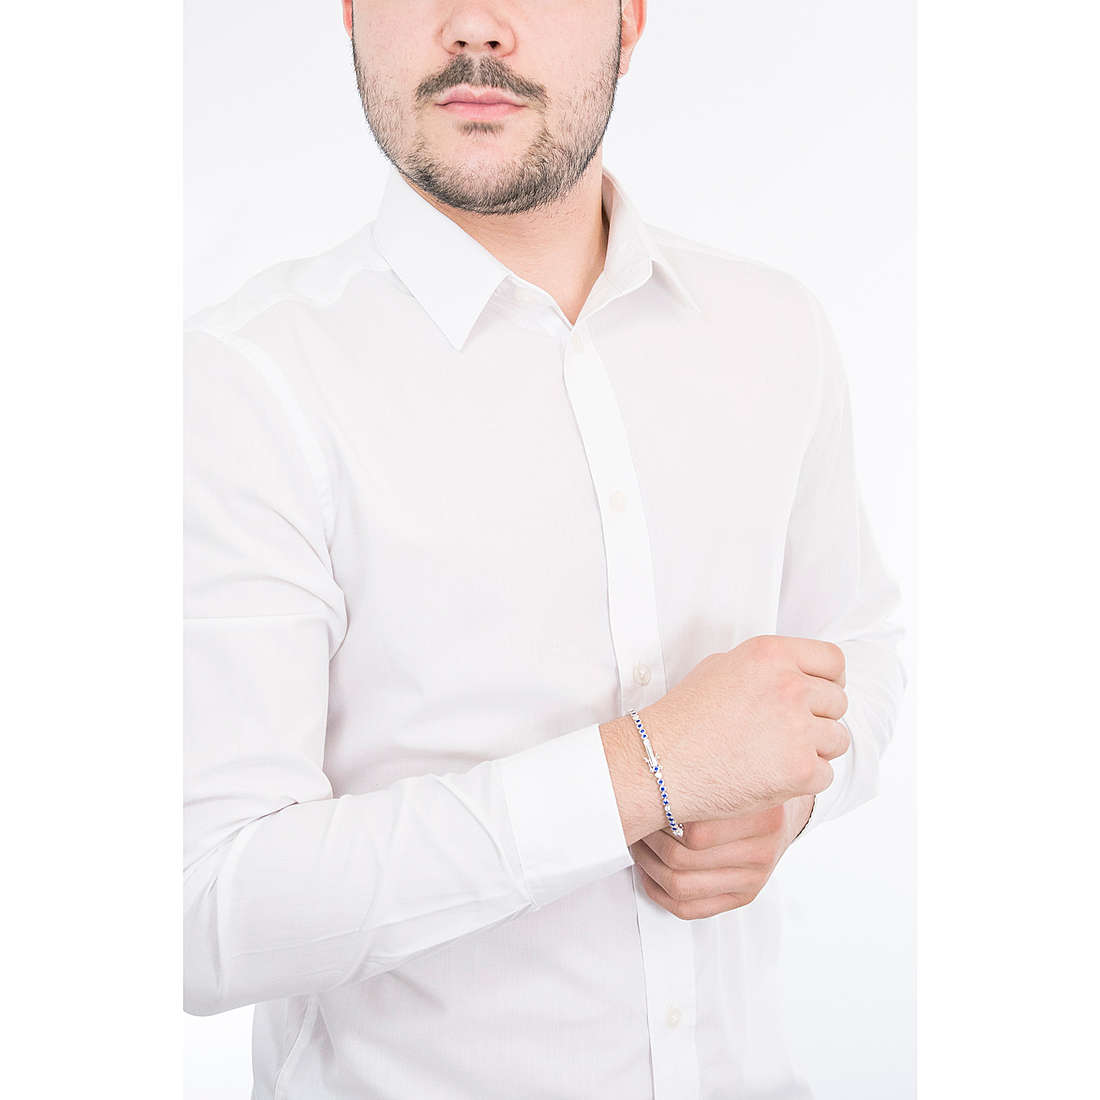 Cesare Paciotti bracelets Loop man JPBR2018B/21 wearing